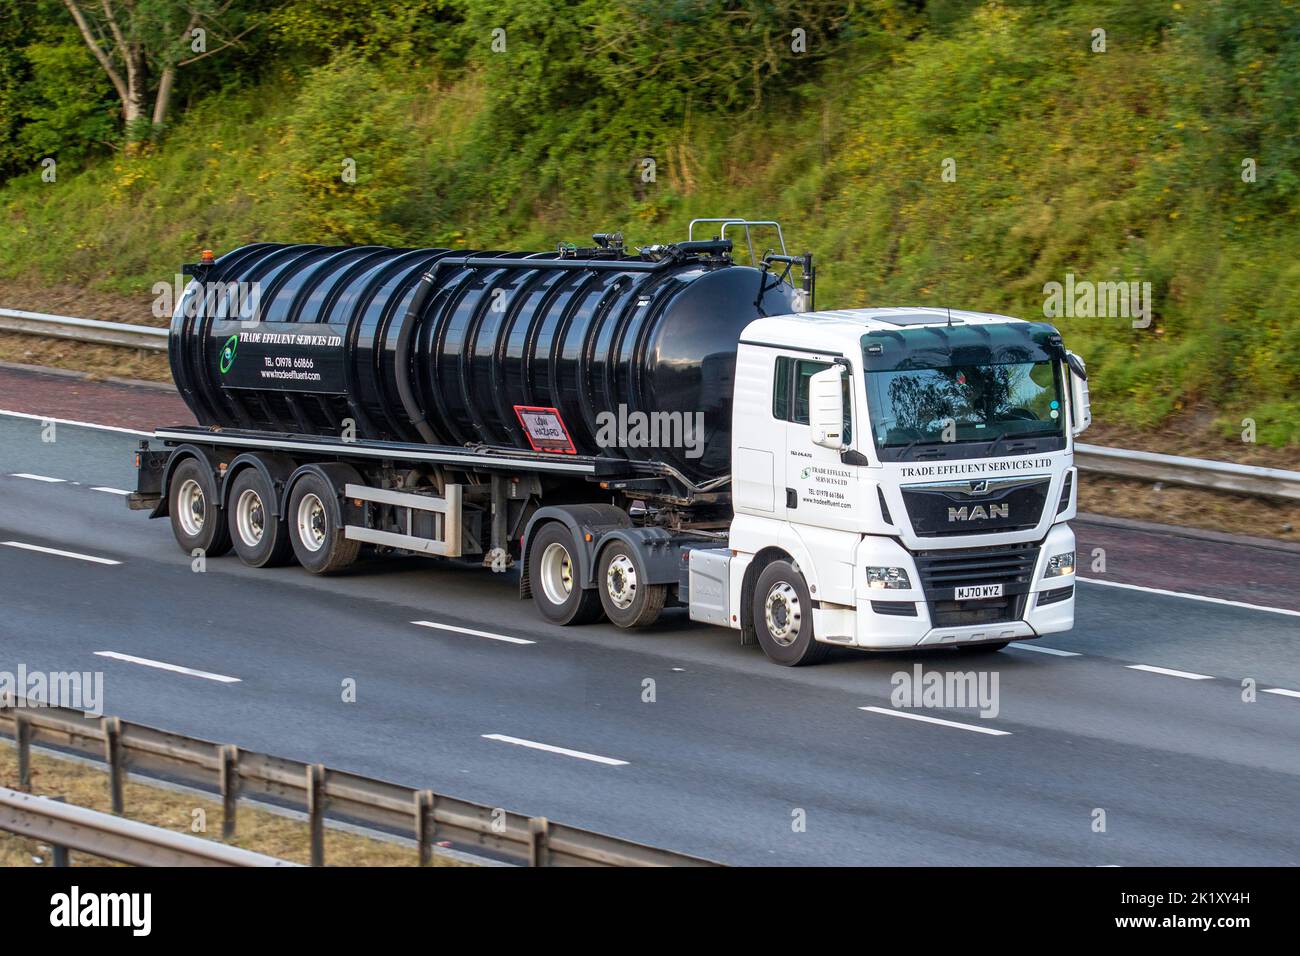 Trade effluent Services Ltd, Pump-Out Trucks, une société indépendante de gestion des déchets. Transporteurs de déchets enregistrés camion-citerne voyageant sur l'autoroute M6, Royaume-Uni Banque D'Images